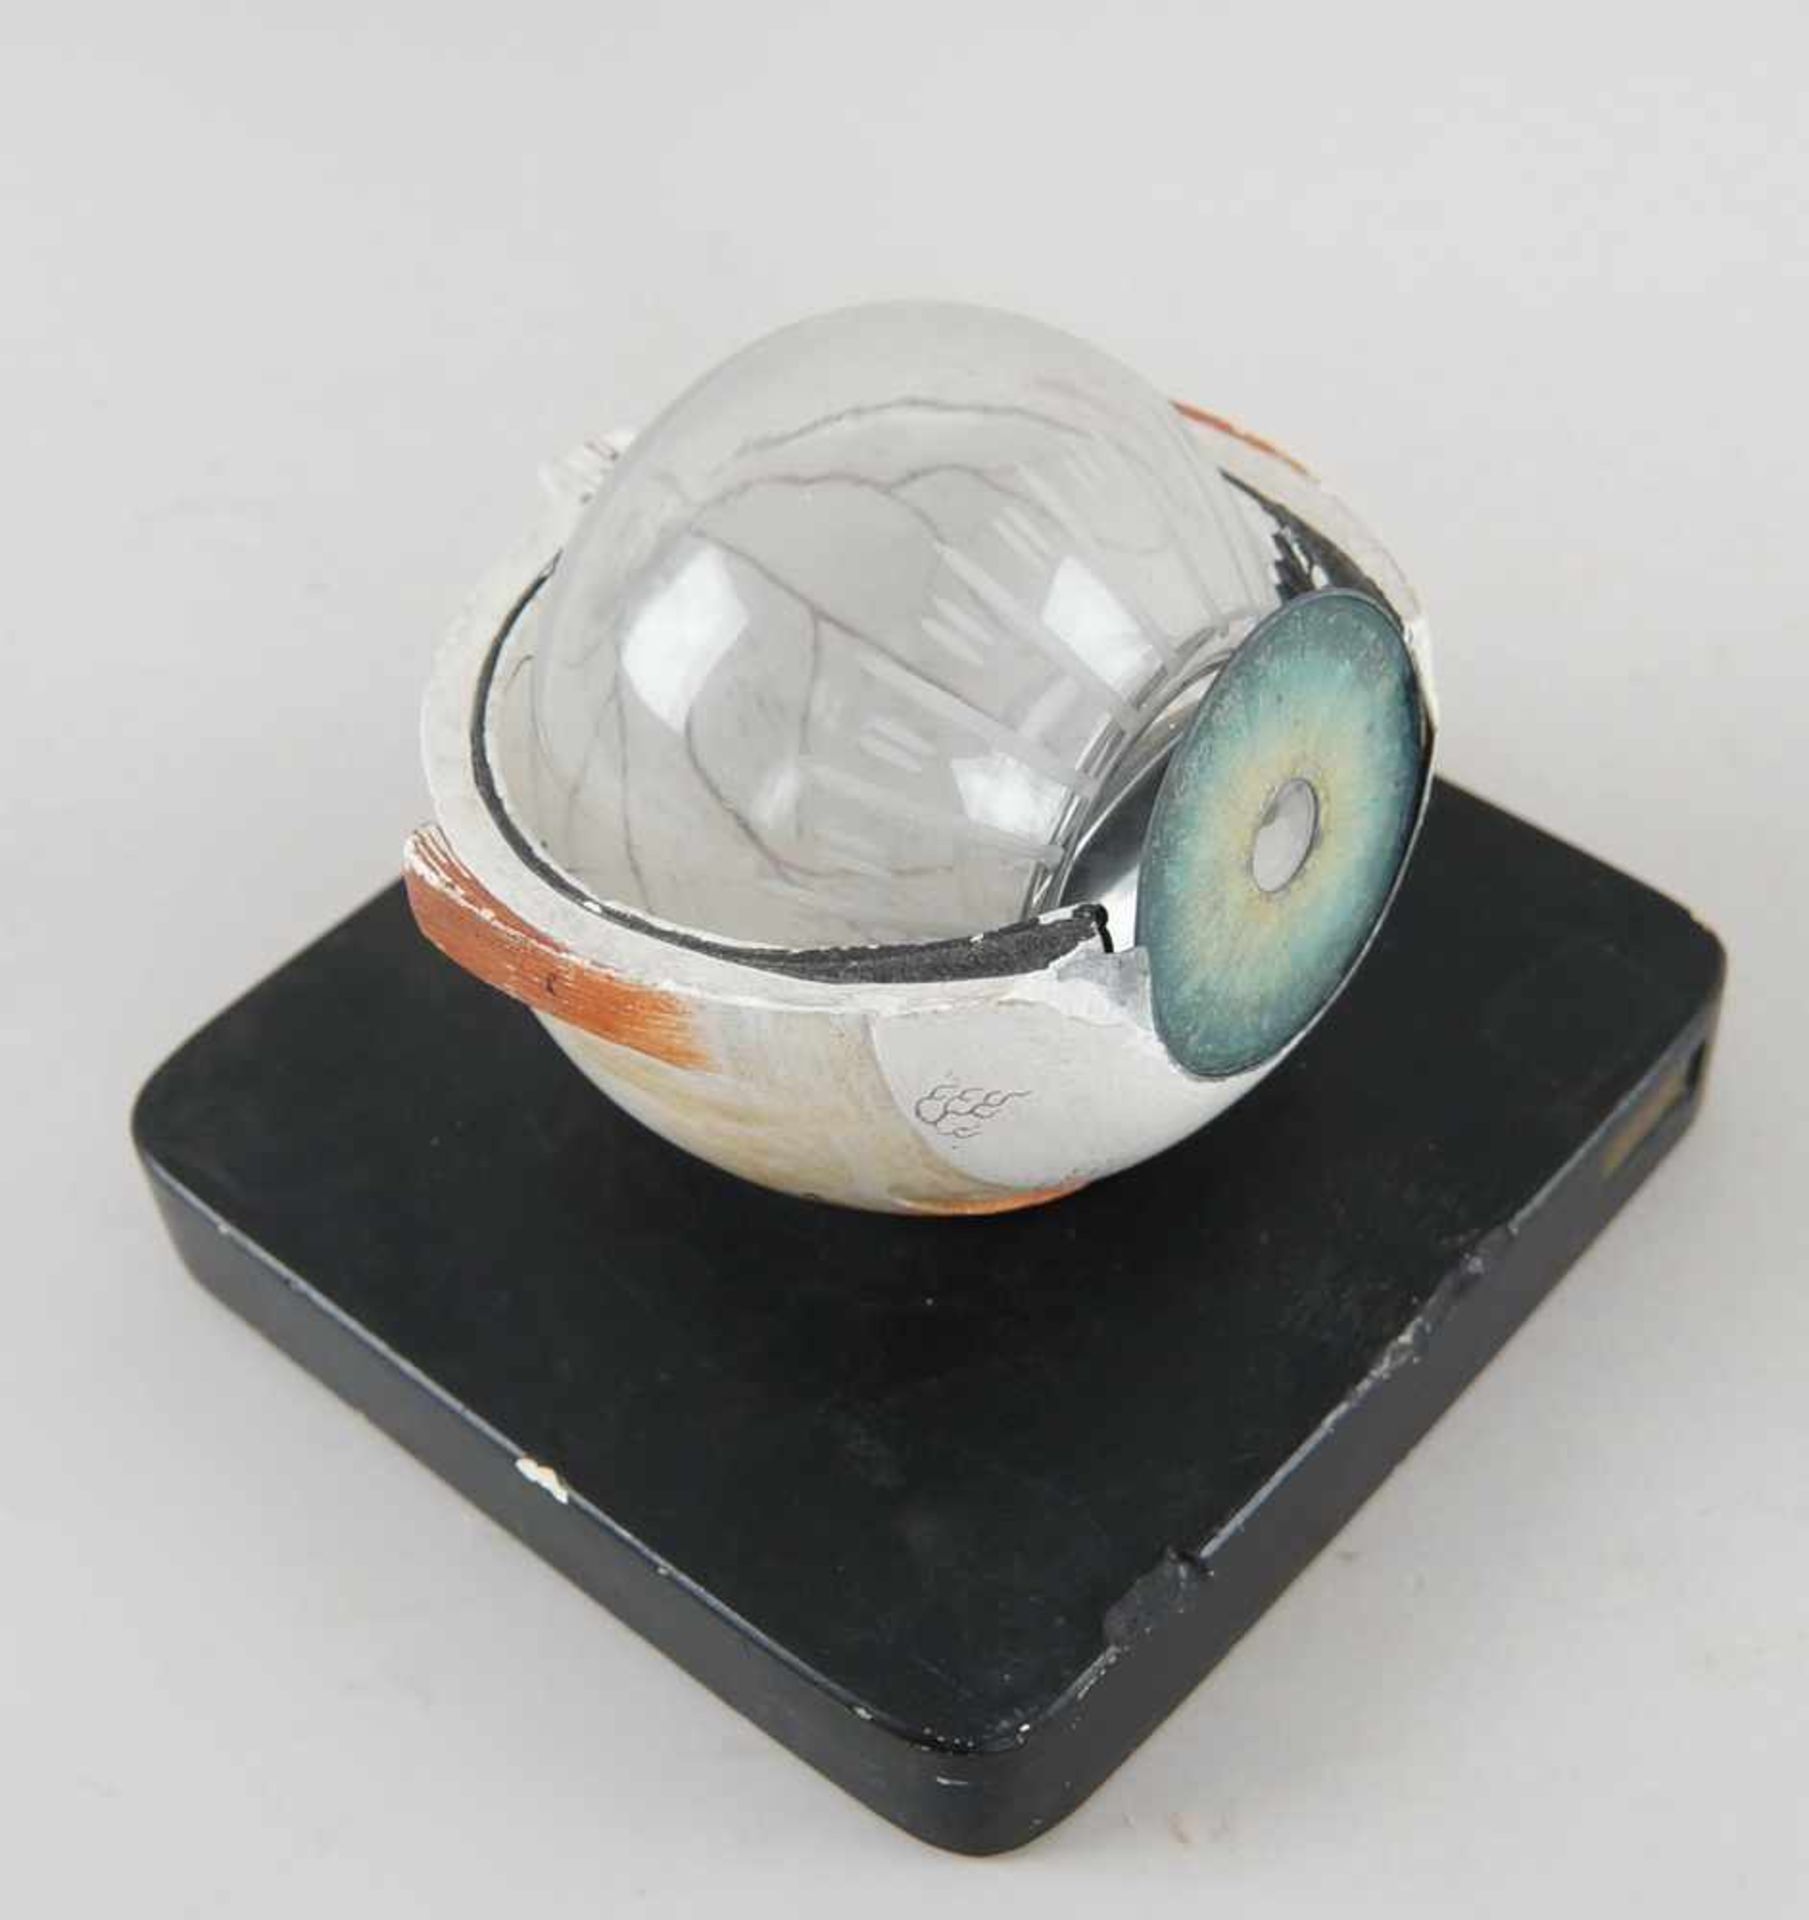 Anatomisches Modell eines Auges, Bock Steger, unvollständig, 15x17,5x18cm- - -24.00 % buyer's - Bild 2 aus 5